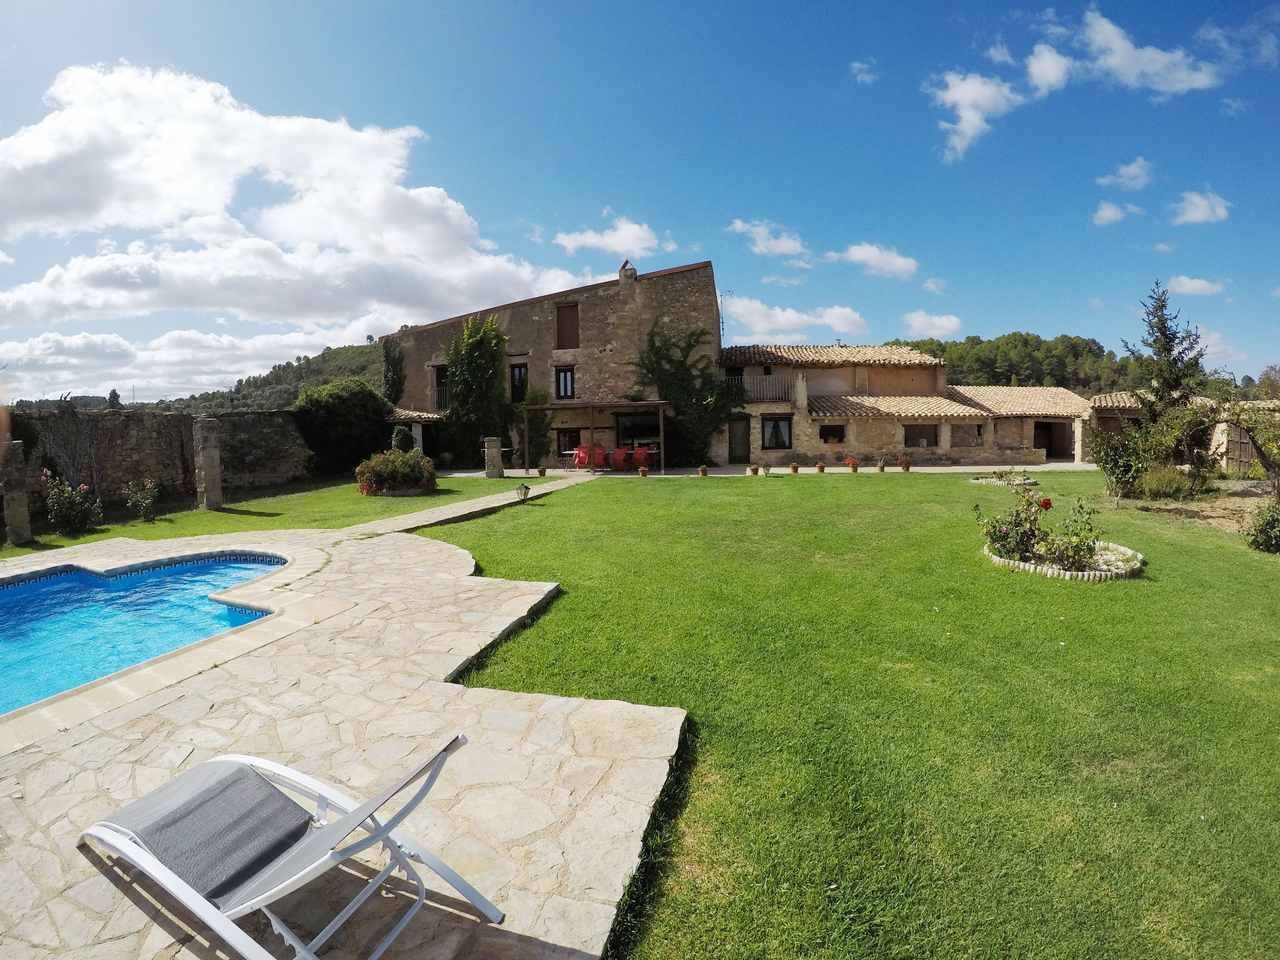 Casa rural con piscina en Horta de Sant Joan, Tarragona.   